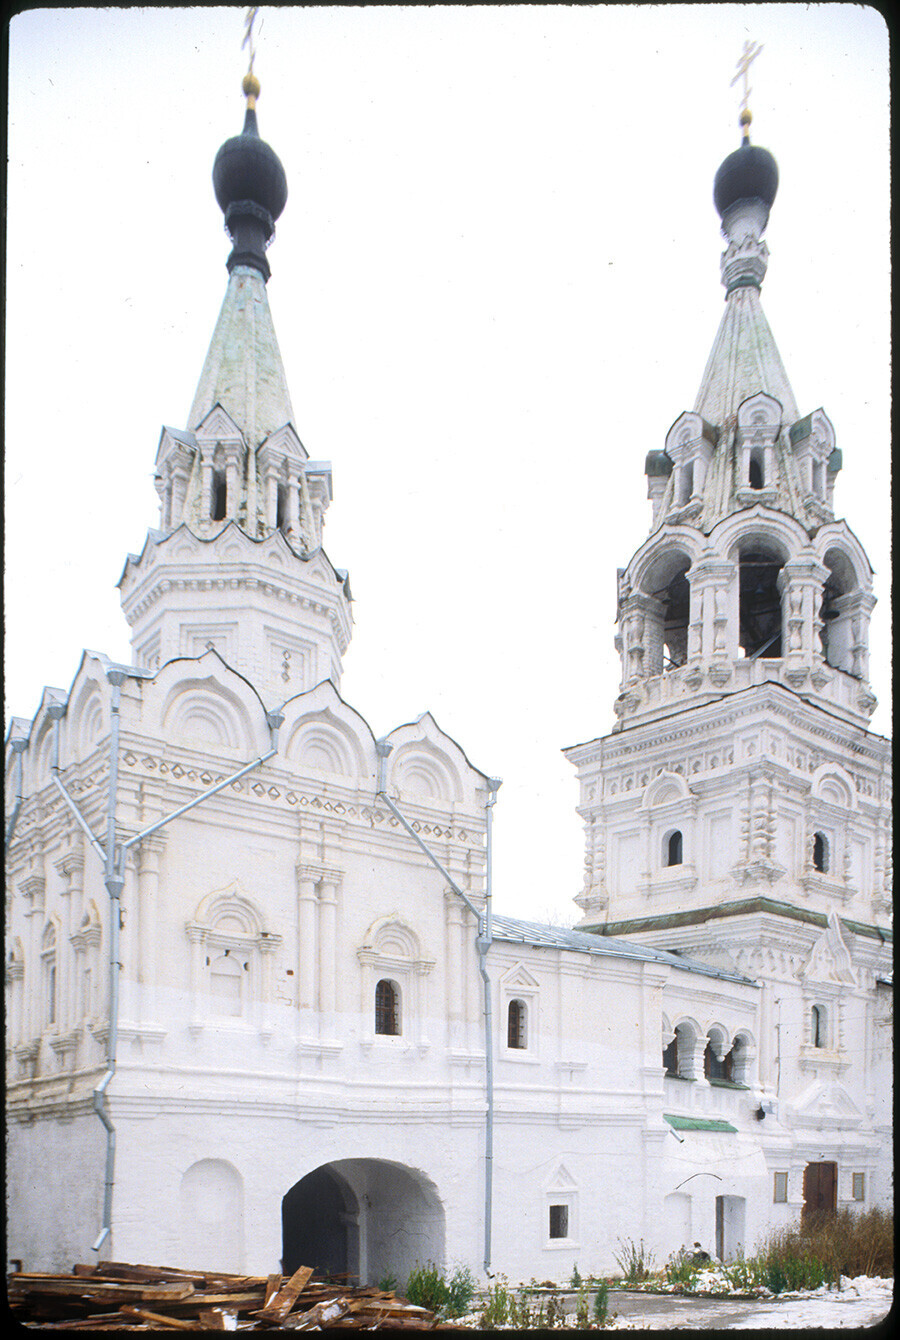 Couvent de la Trinité. Clocher et église de l'icône de la Vierge de Kazan, vue sud-ouest. 26 octobre 2001